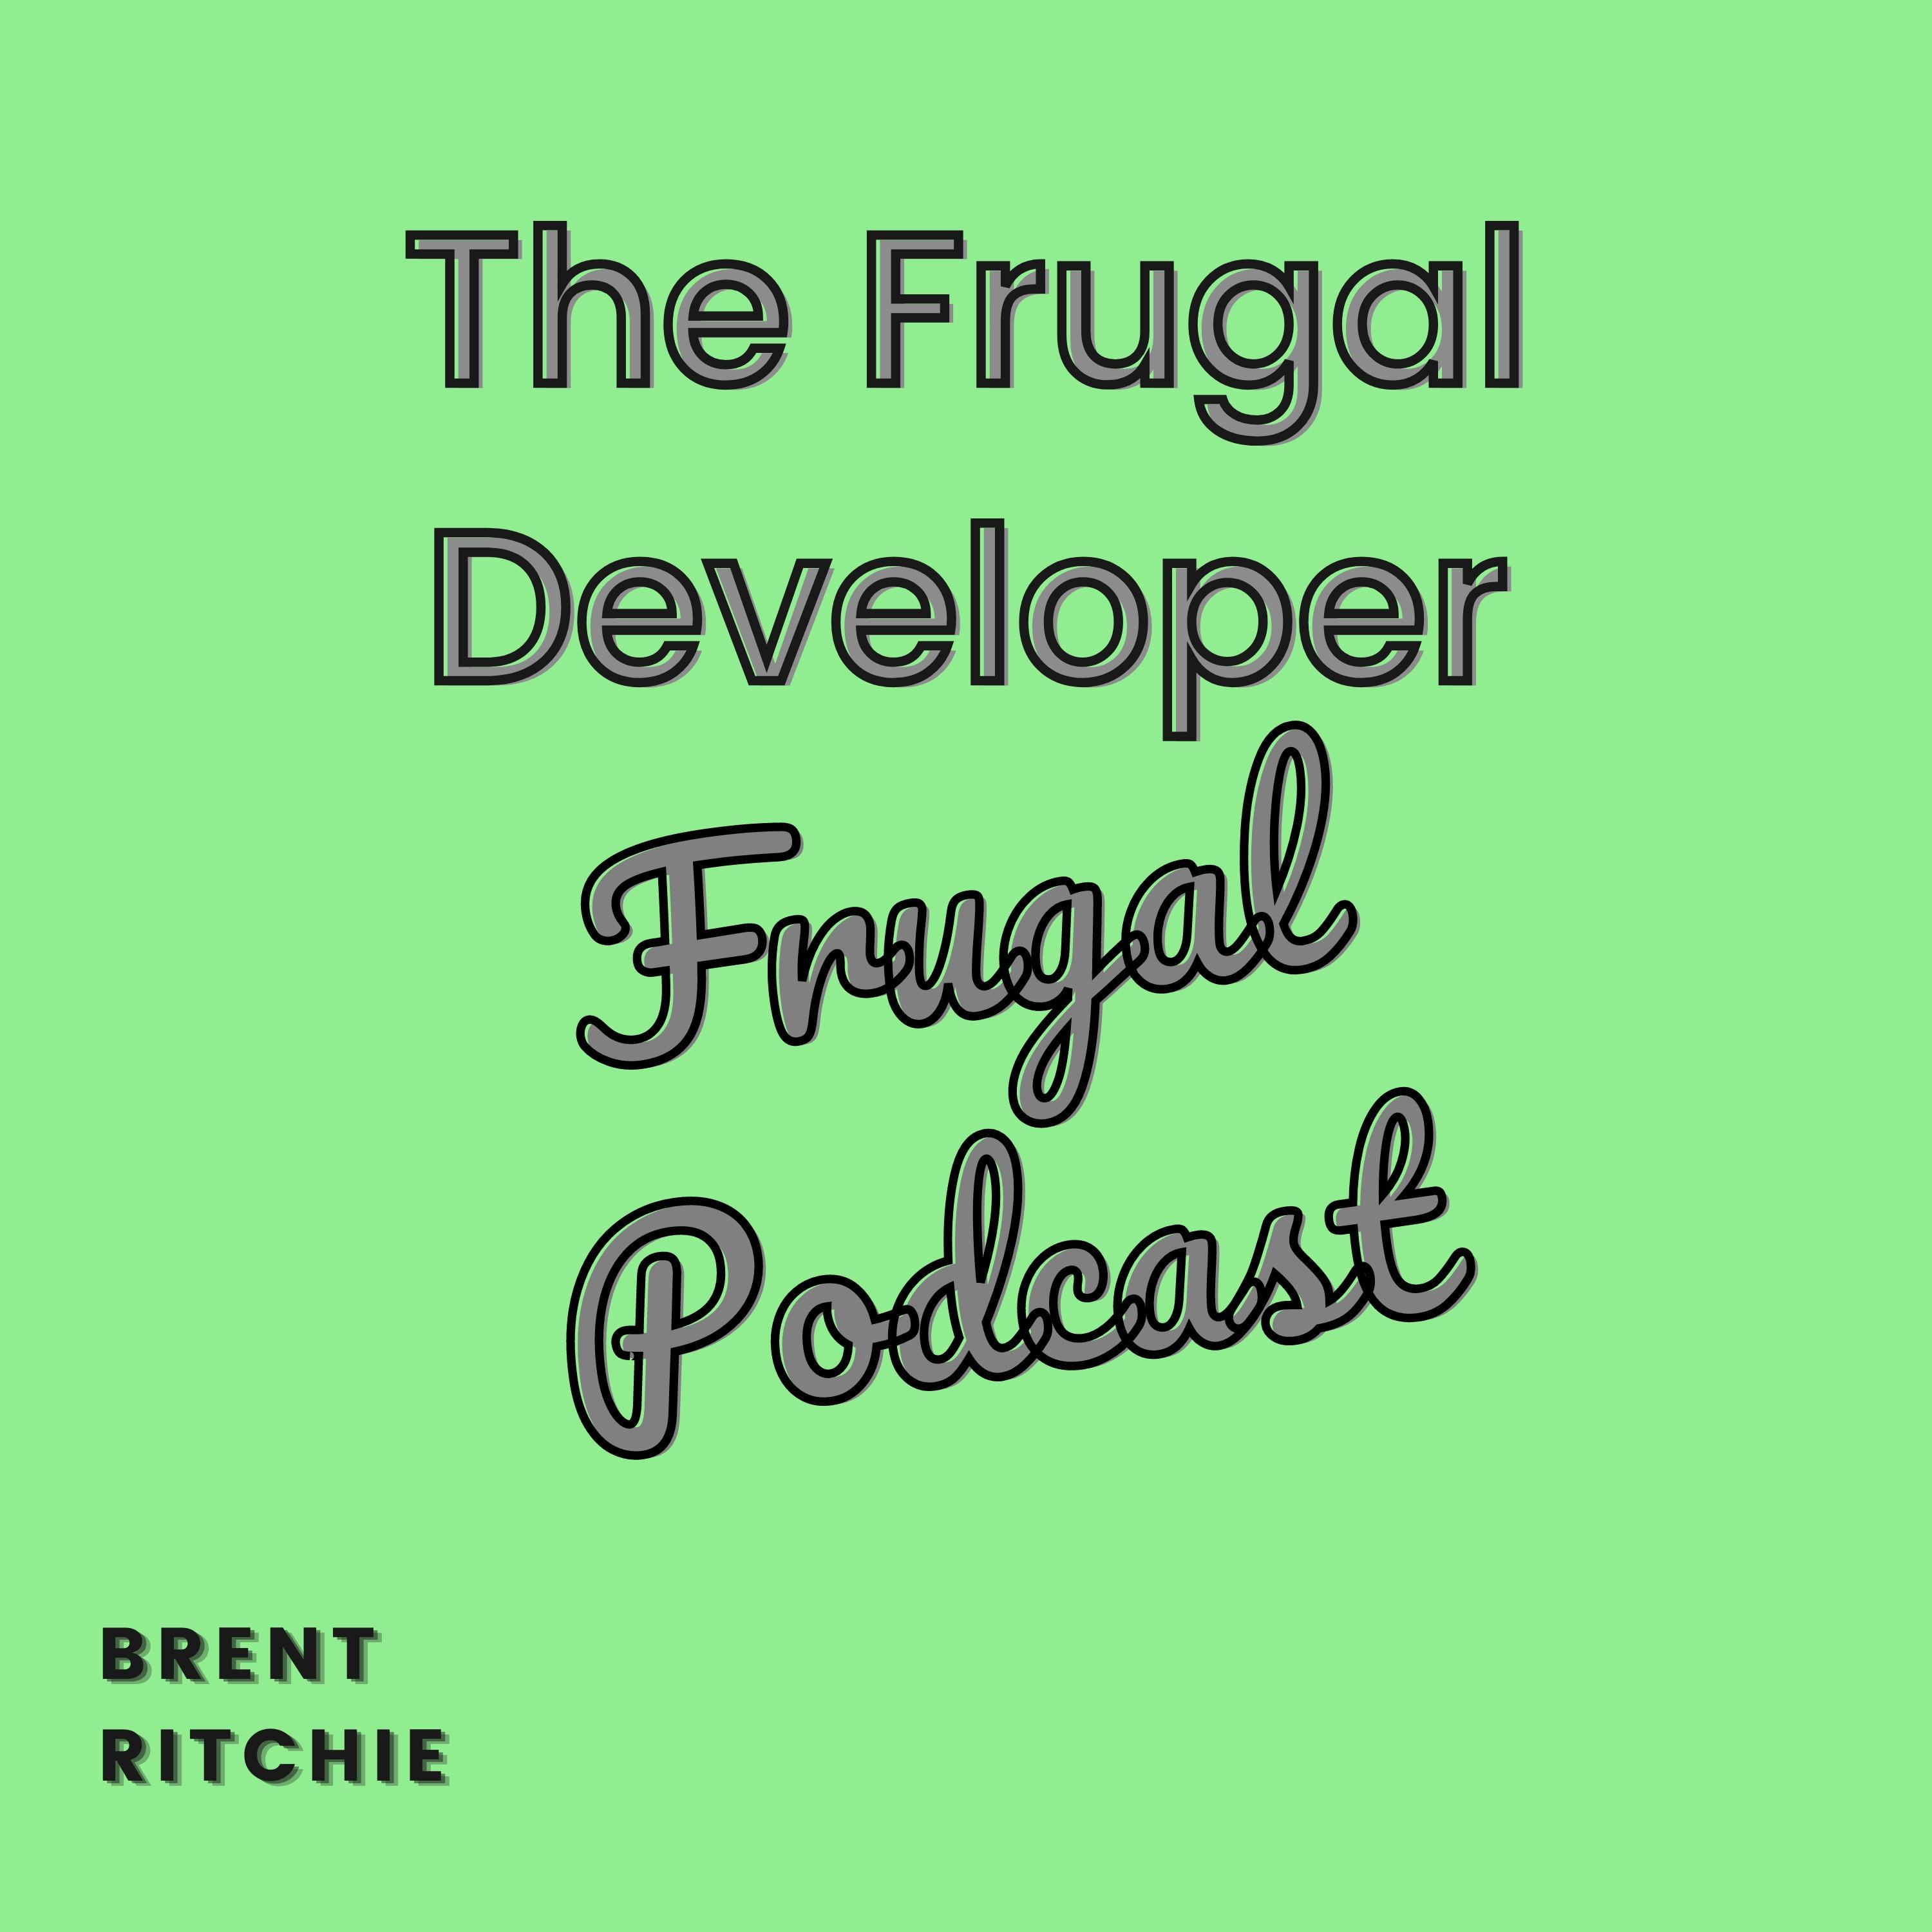 The Frugal Developer Podcast